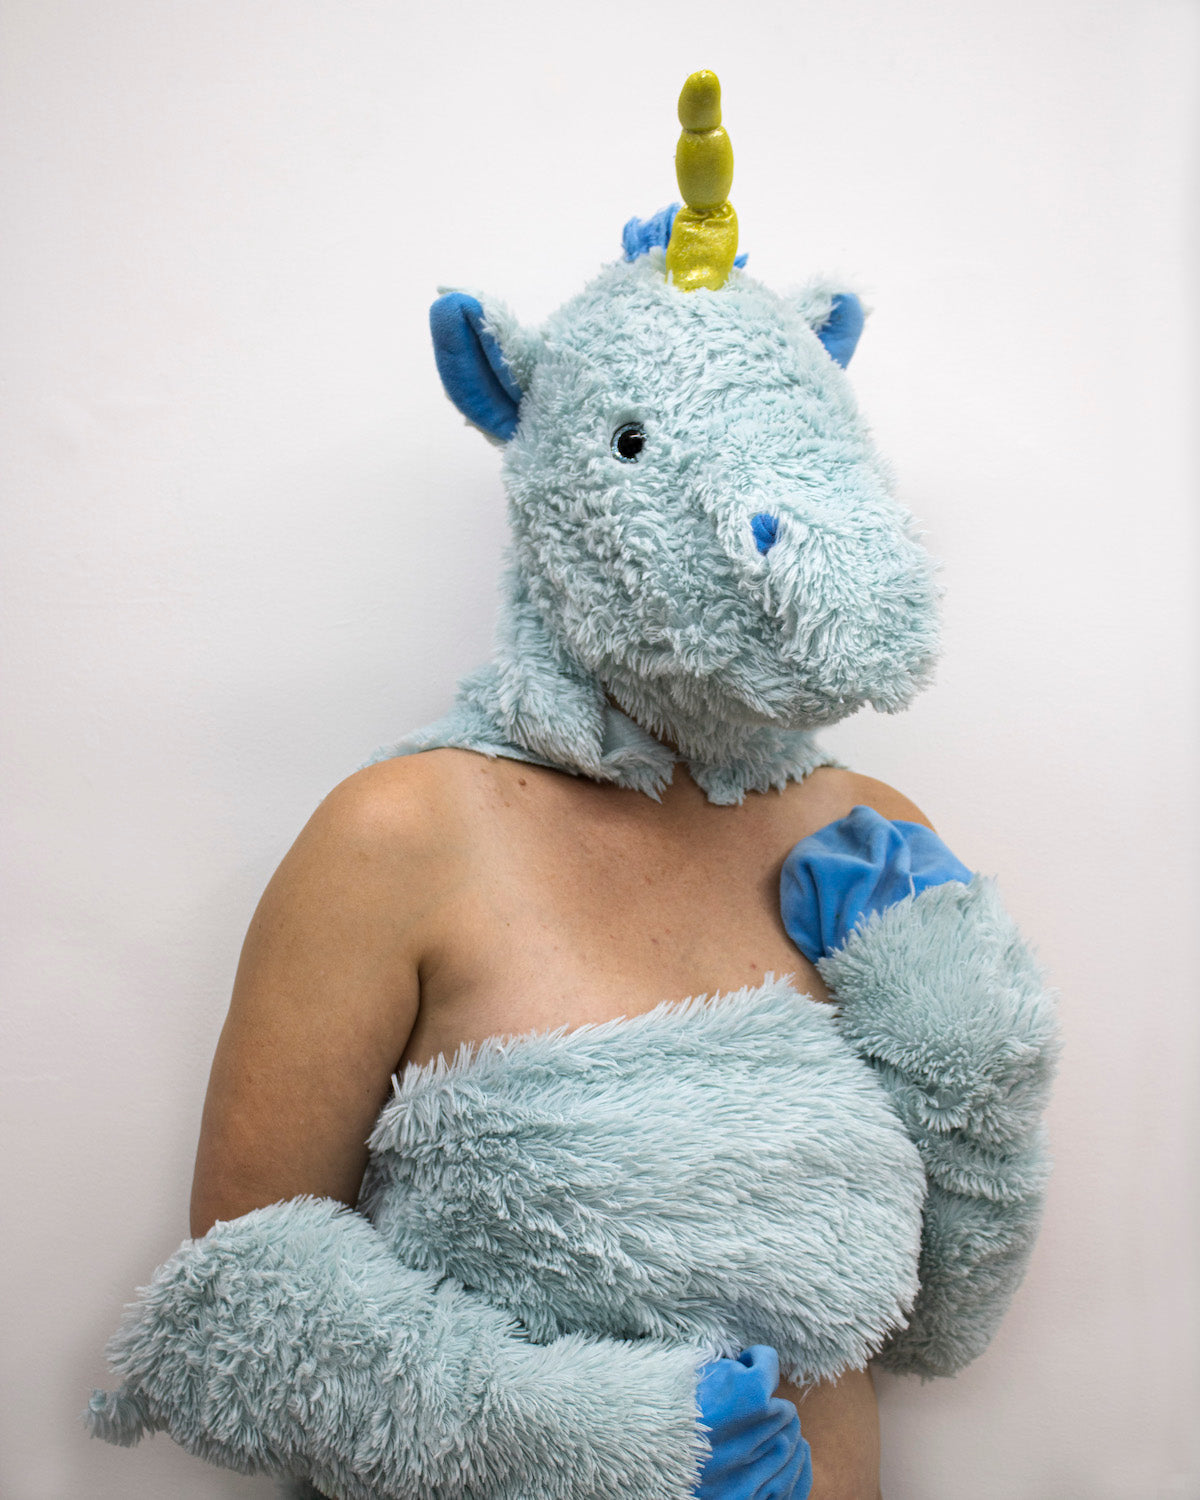 Debra Broz – Blue Unicorn, 2021